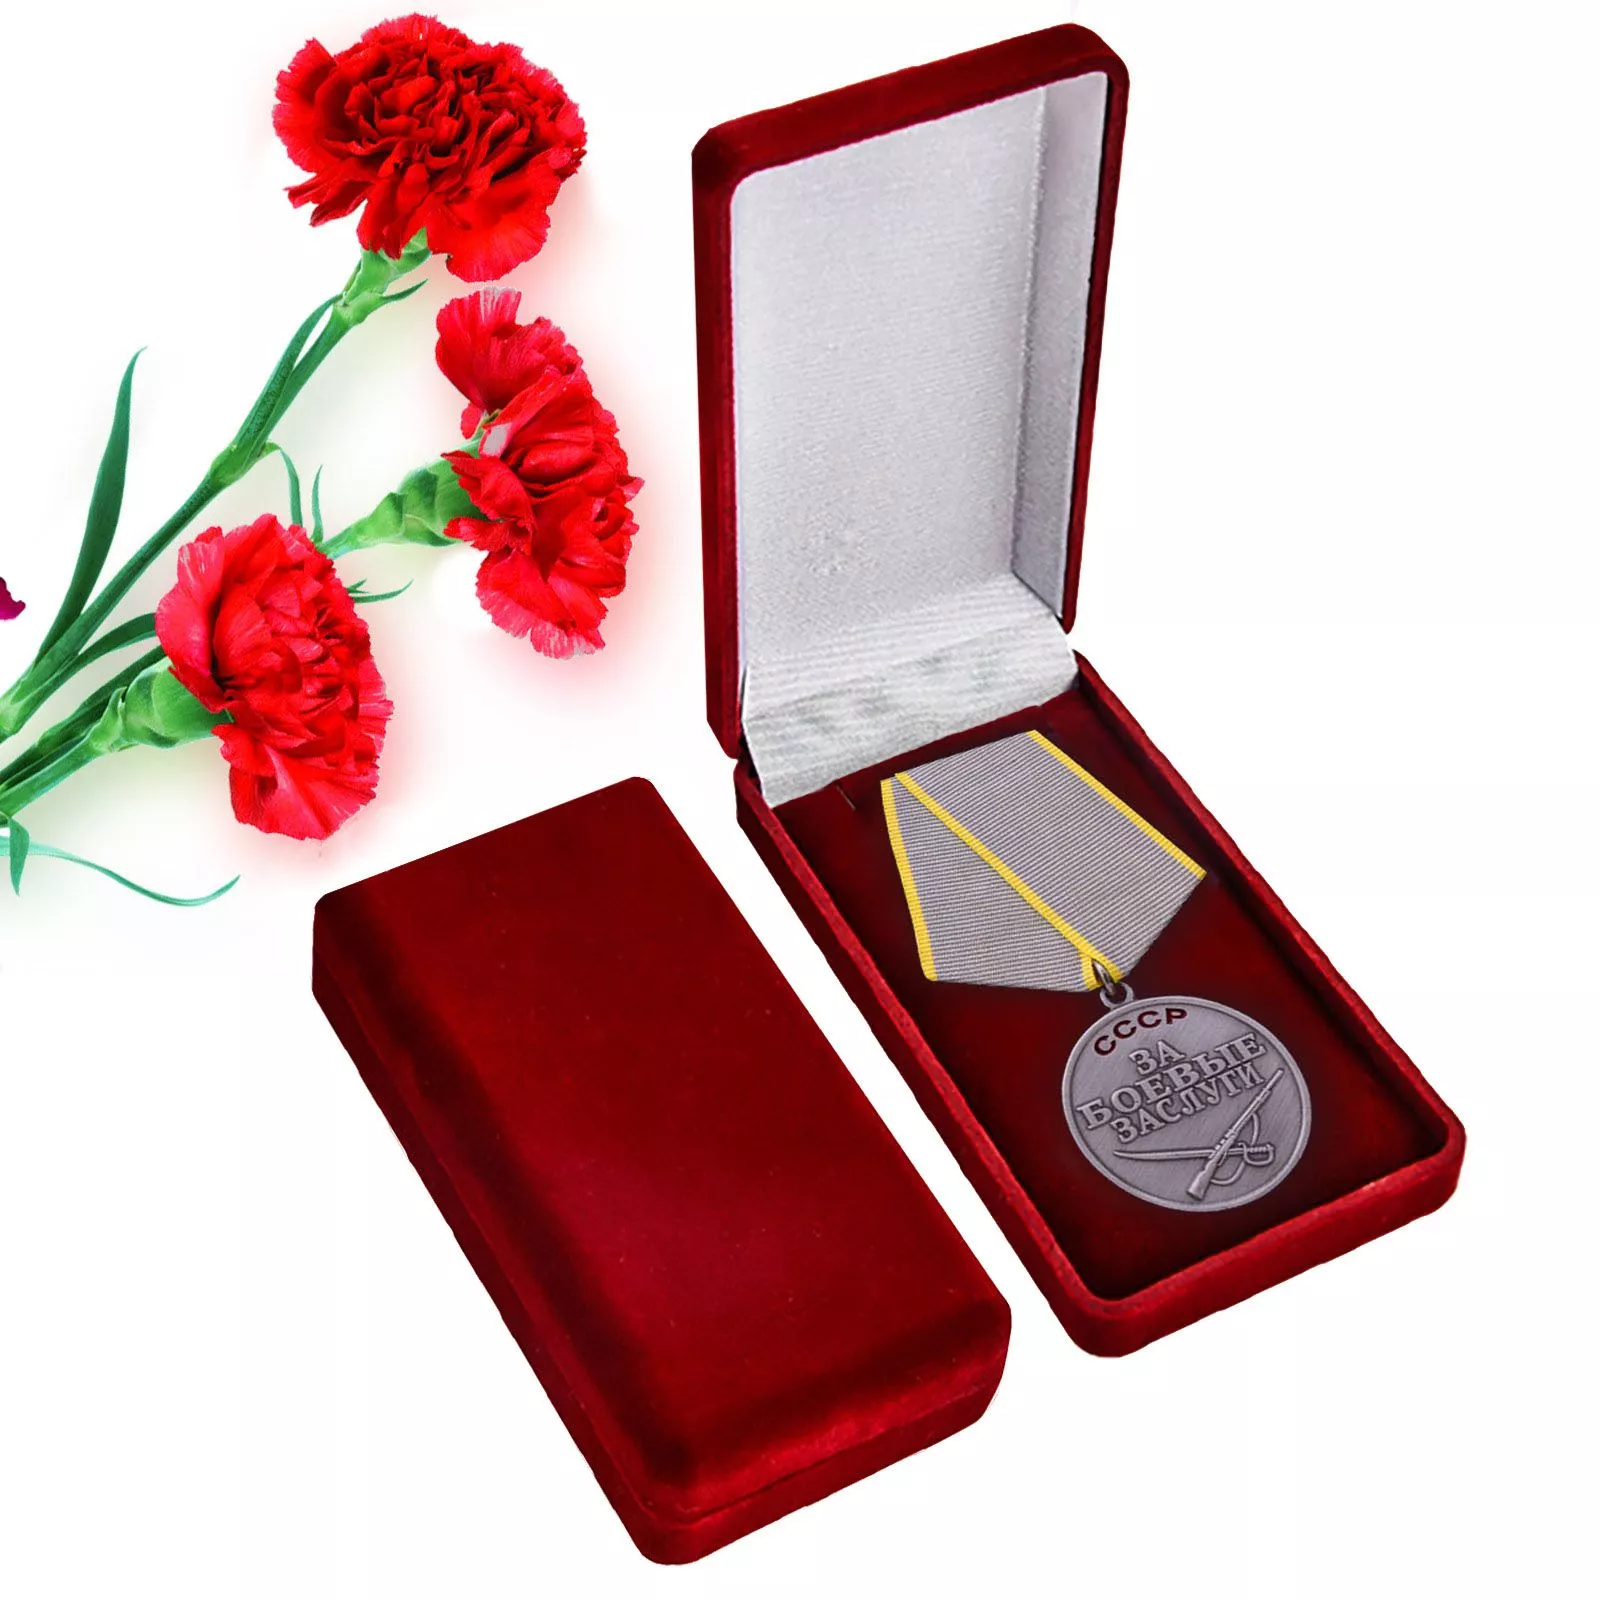 Сувенирная медаль ВОВ "За боевые заслуги" в подарочном футляре №624(386)